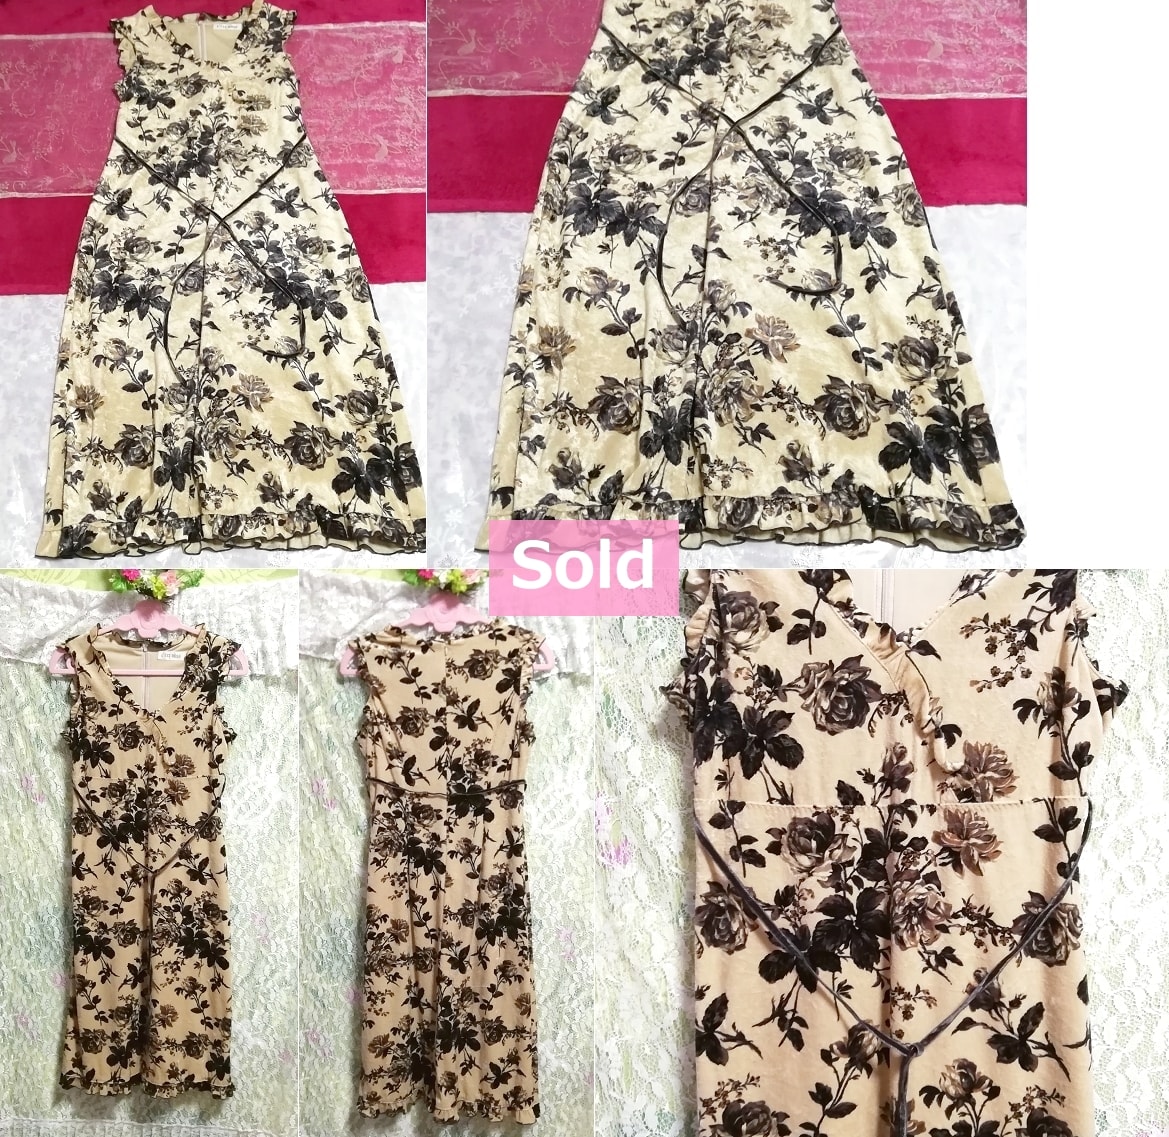 日本製亜麻色黒花柄ノースリーブワンピース Made in Japan flax black flower pattern sleeveless onepiece